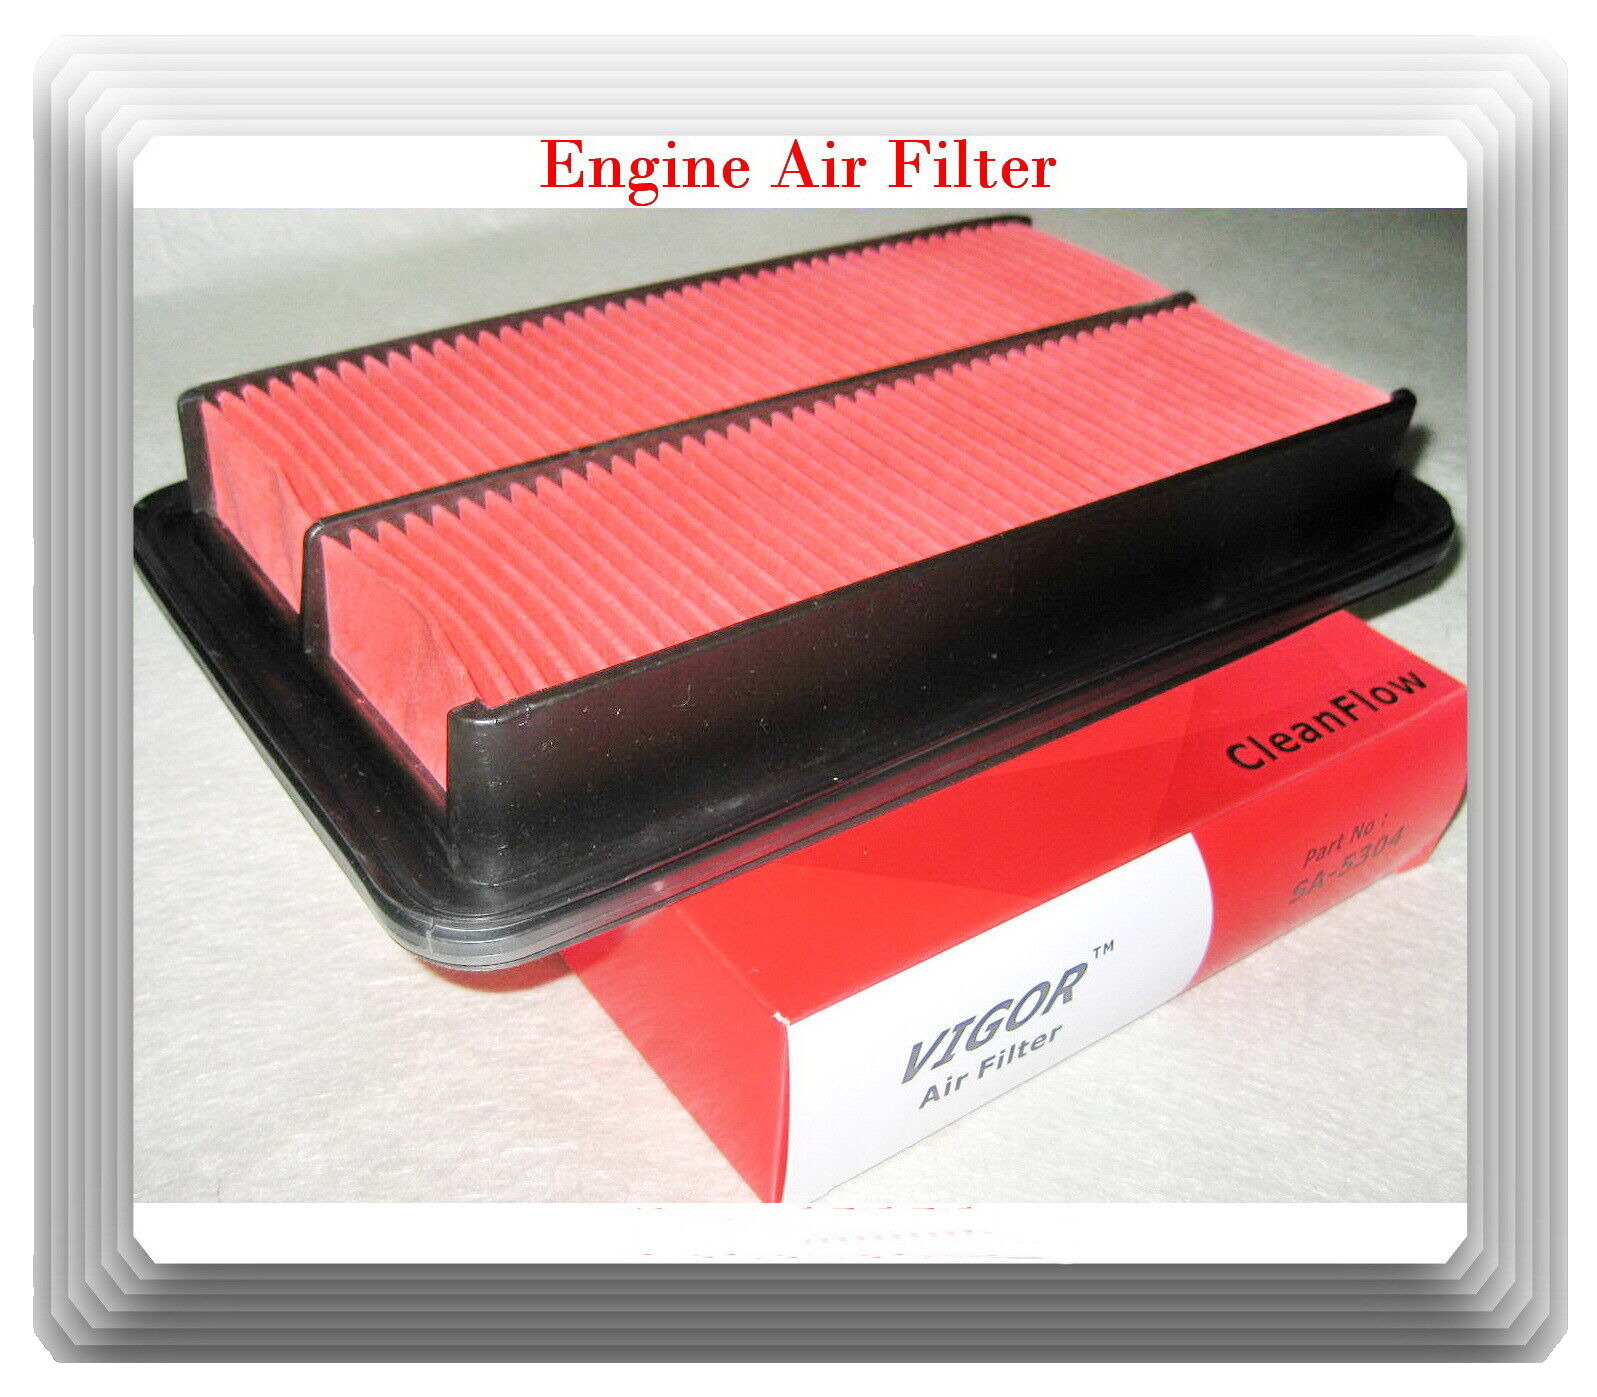 Engine Air Filter Fits#OEM# B6MW-13-Z40 Mazda Miata MX-5 1999-2005 L4 1.8L